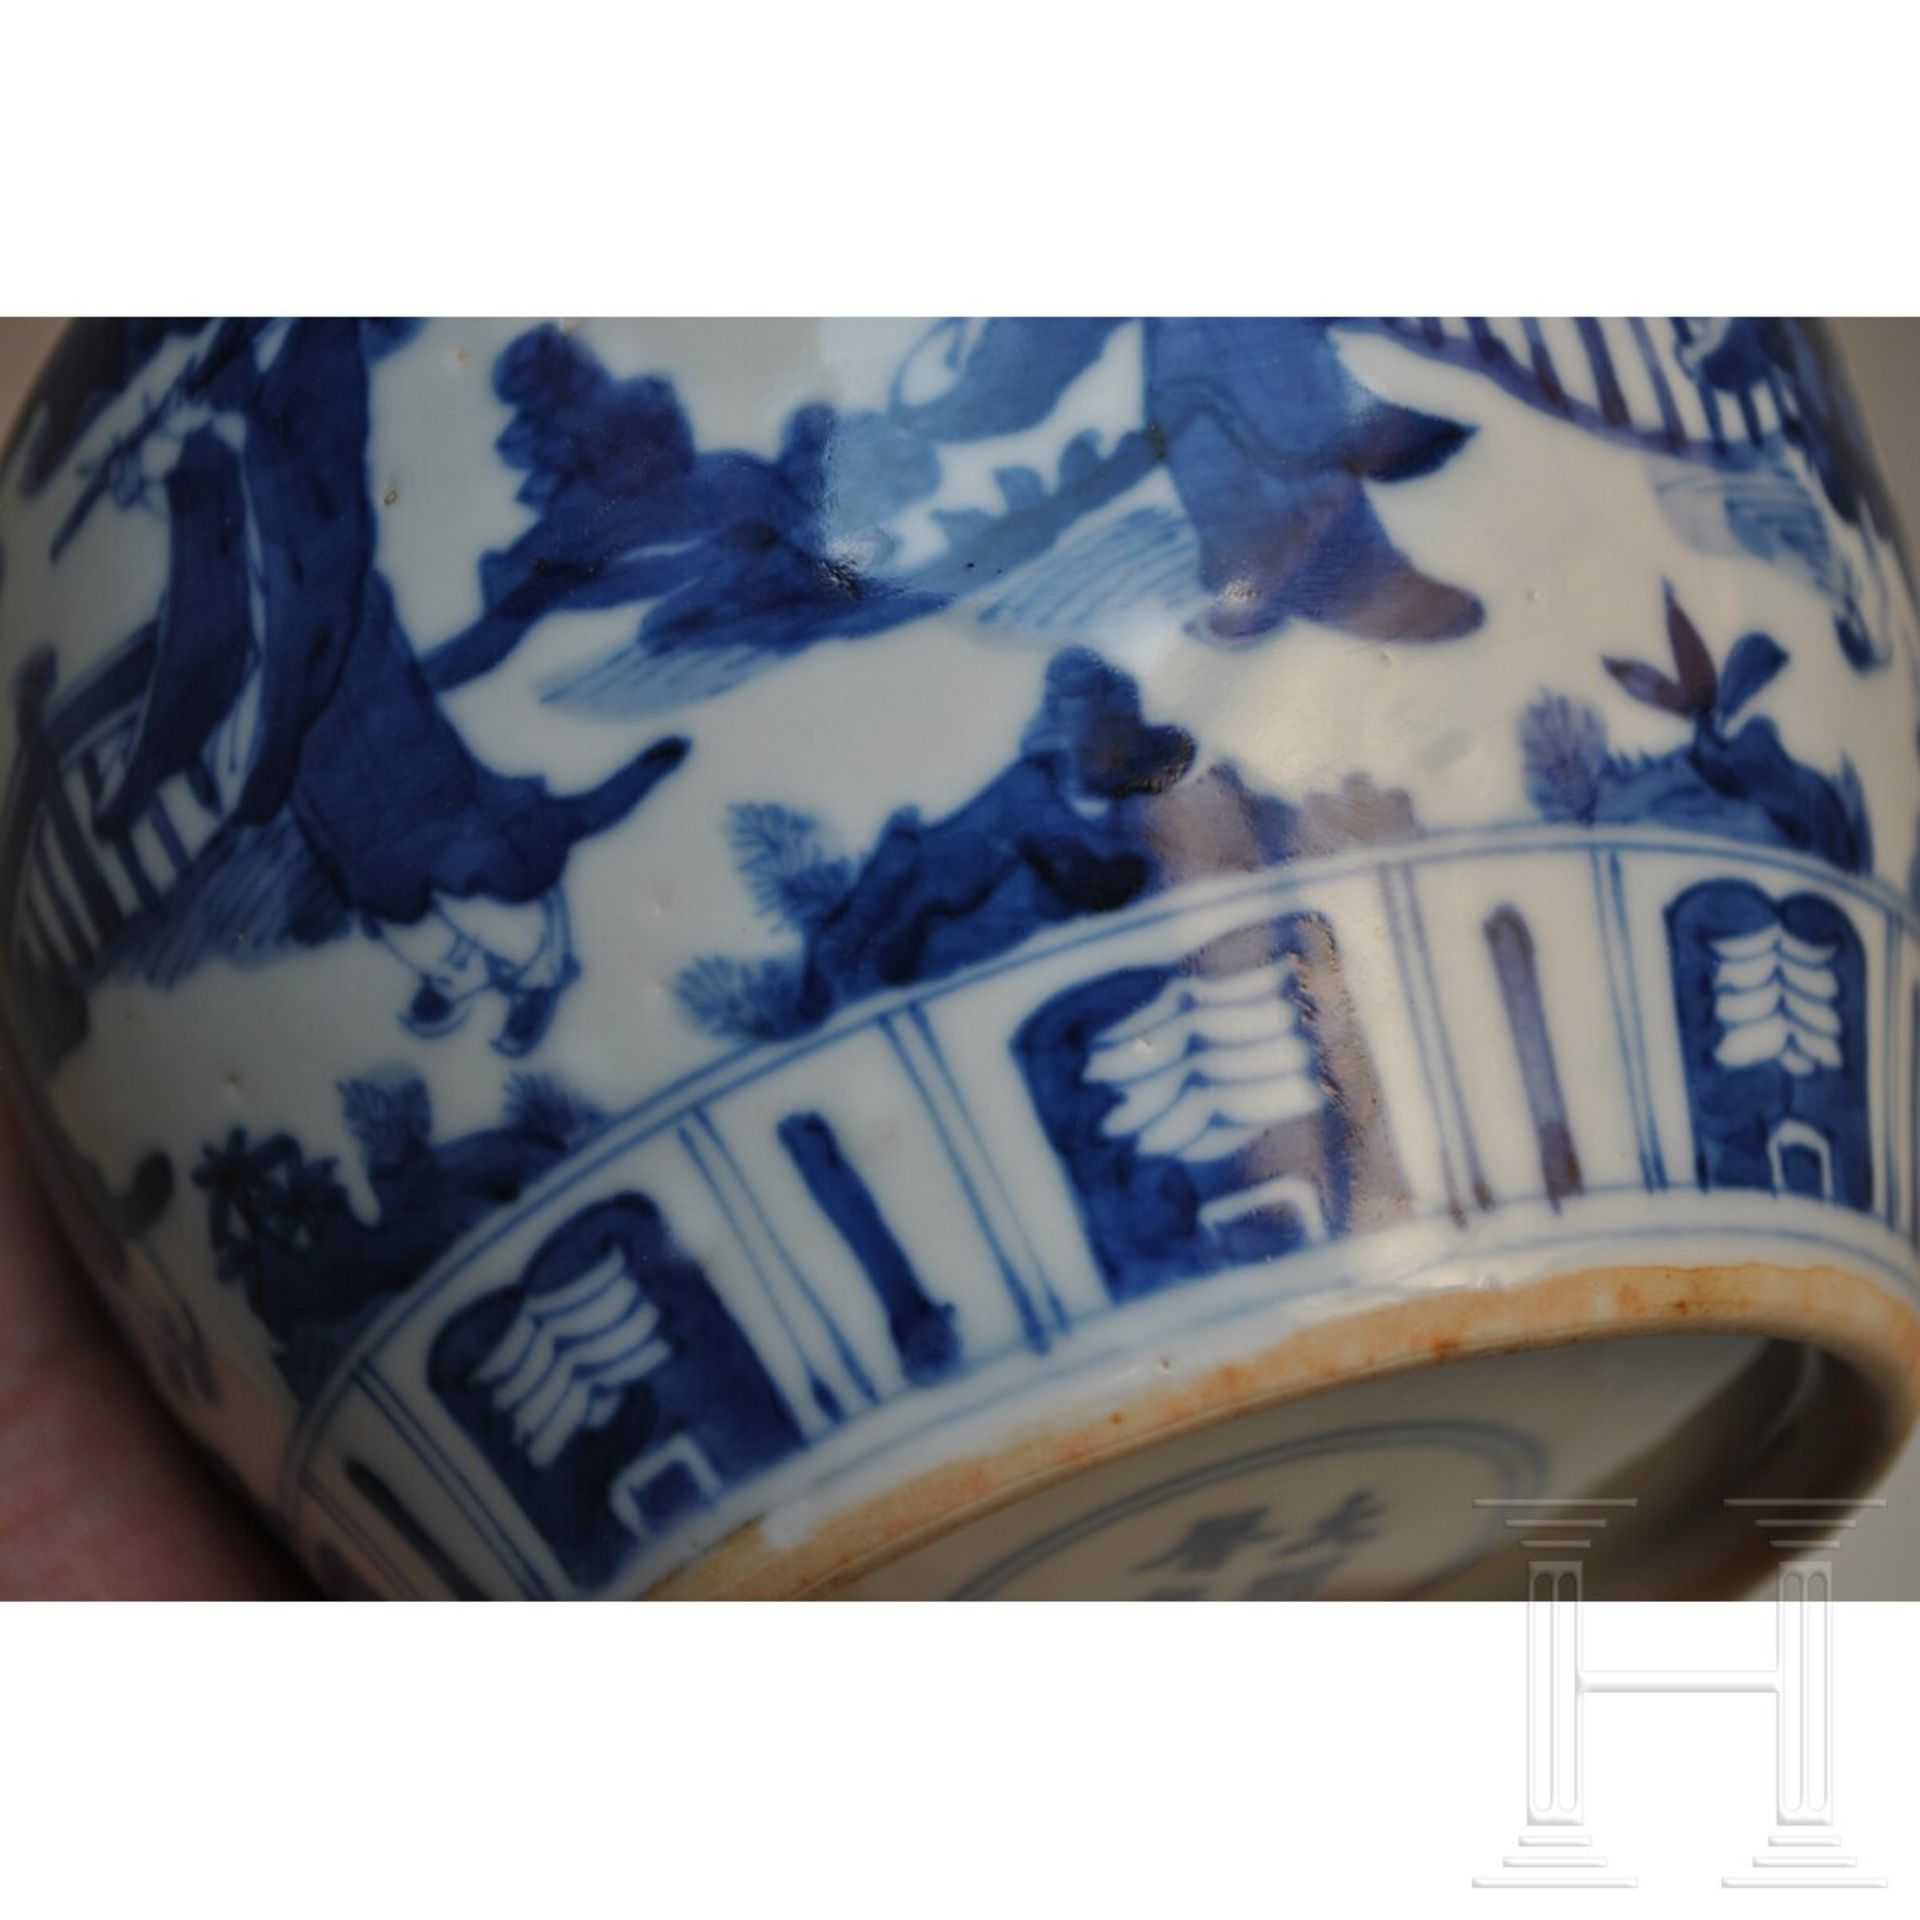 Blau-weiße Vase mit figürlicher Szene mit Wanli-Sechszeichenmarke, China, wahrscheinlich aus dieser - Image 9 of 18